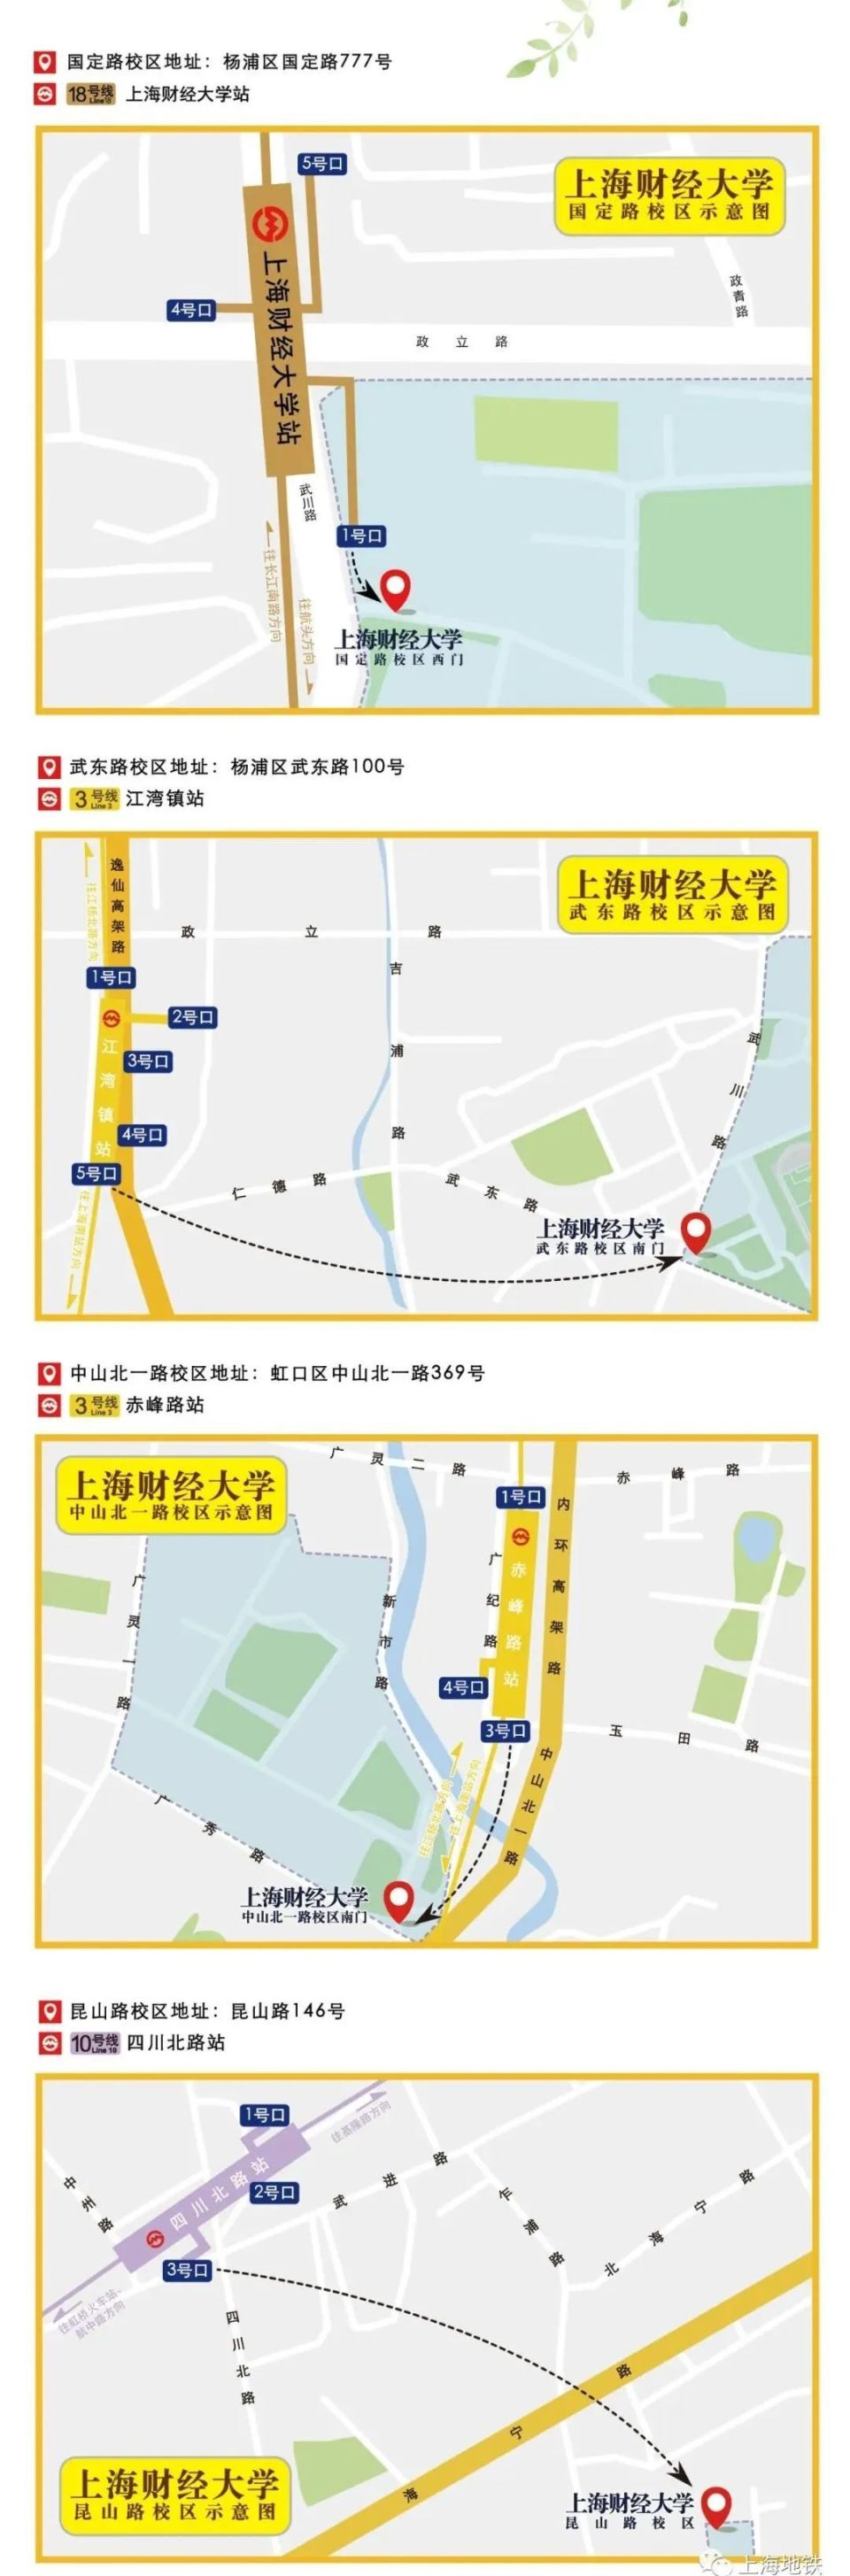 在上海搭乘地铁可以到哪些大学?